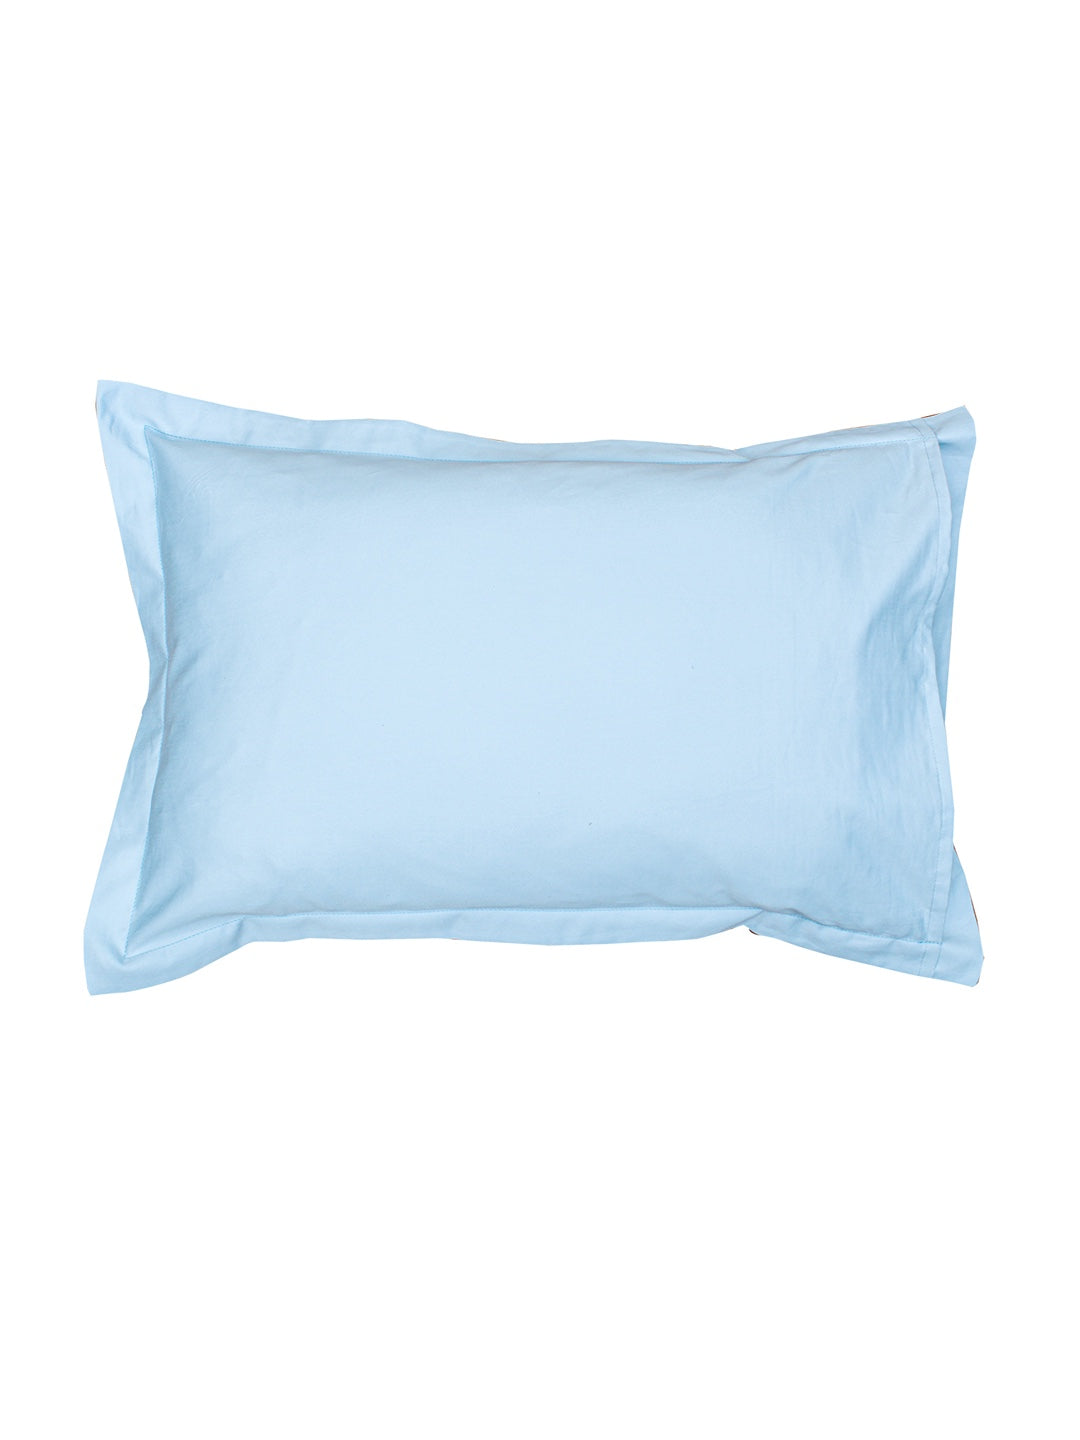 Pillow set  - Juniper Cotton